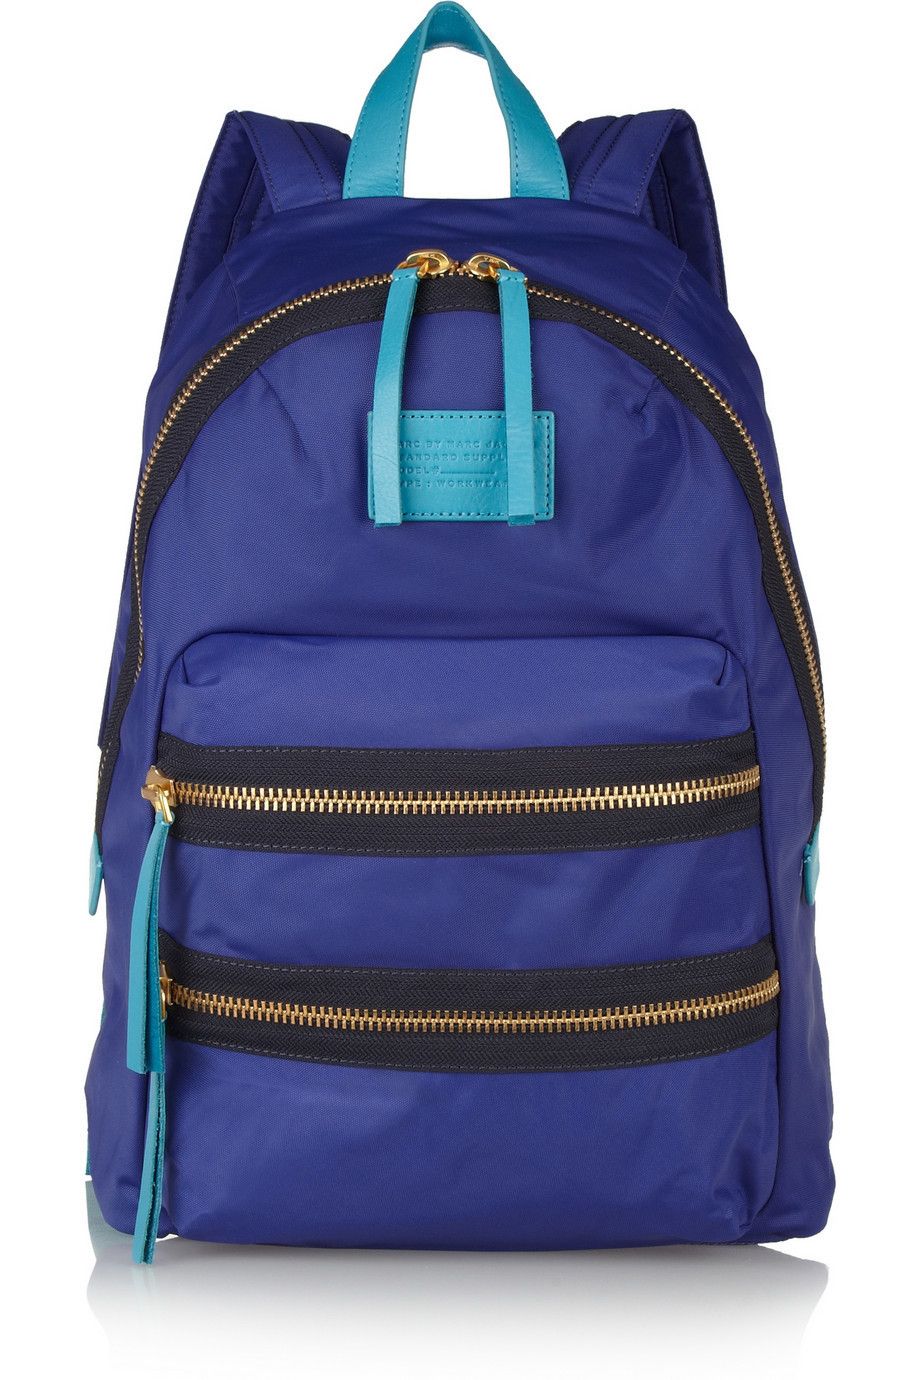 Blue, Bag, Electric blue, Azure, Cobalt blue, Luggage and bags, Teal, Shoulder bag, Zipper, Strap, 